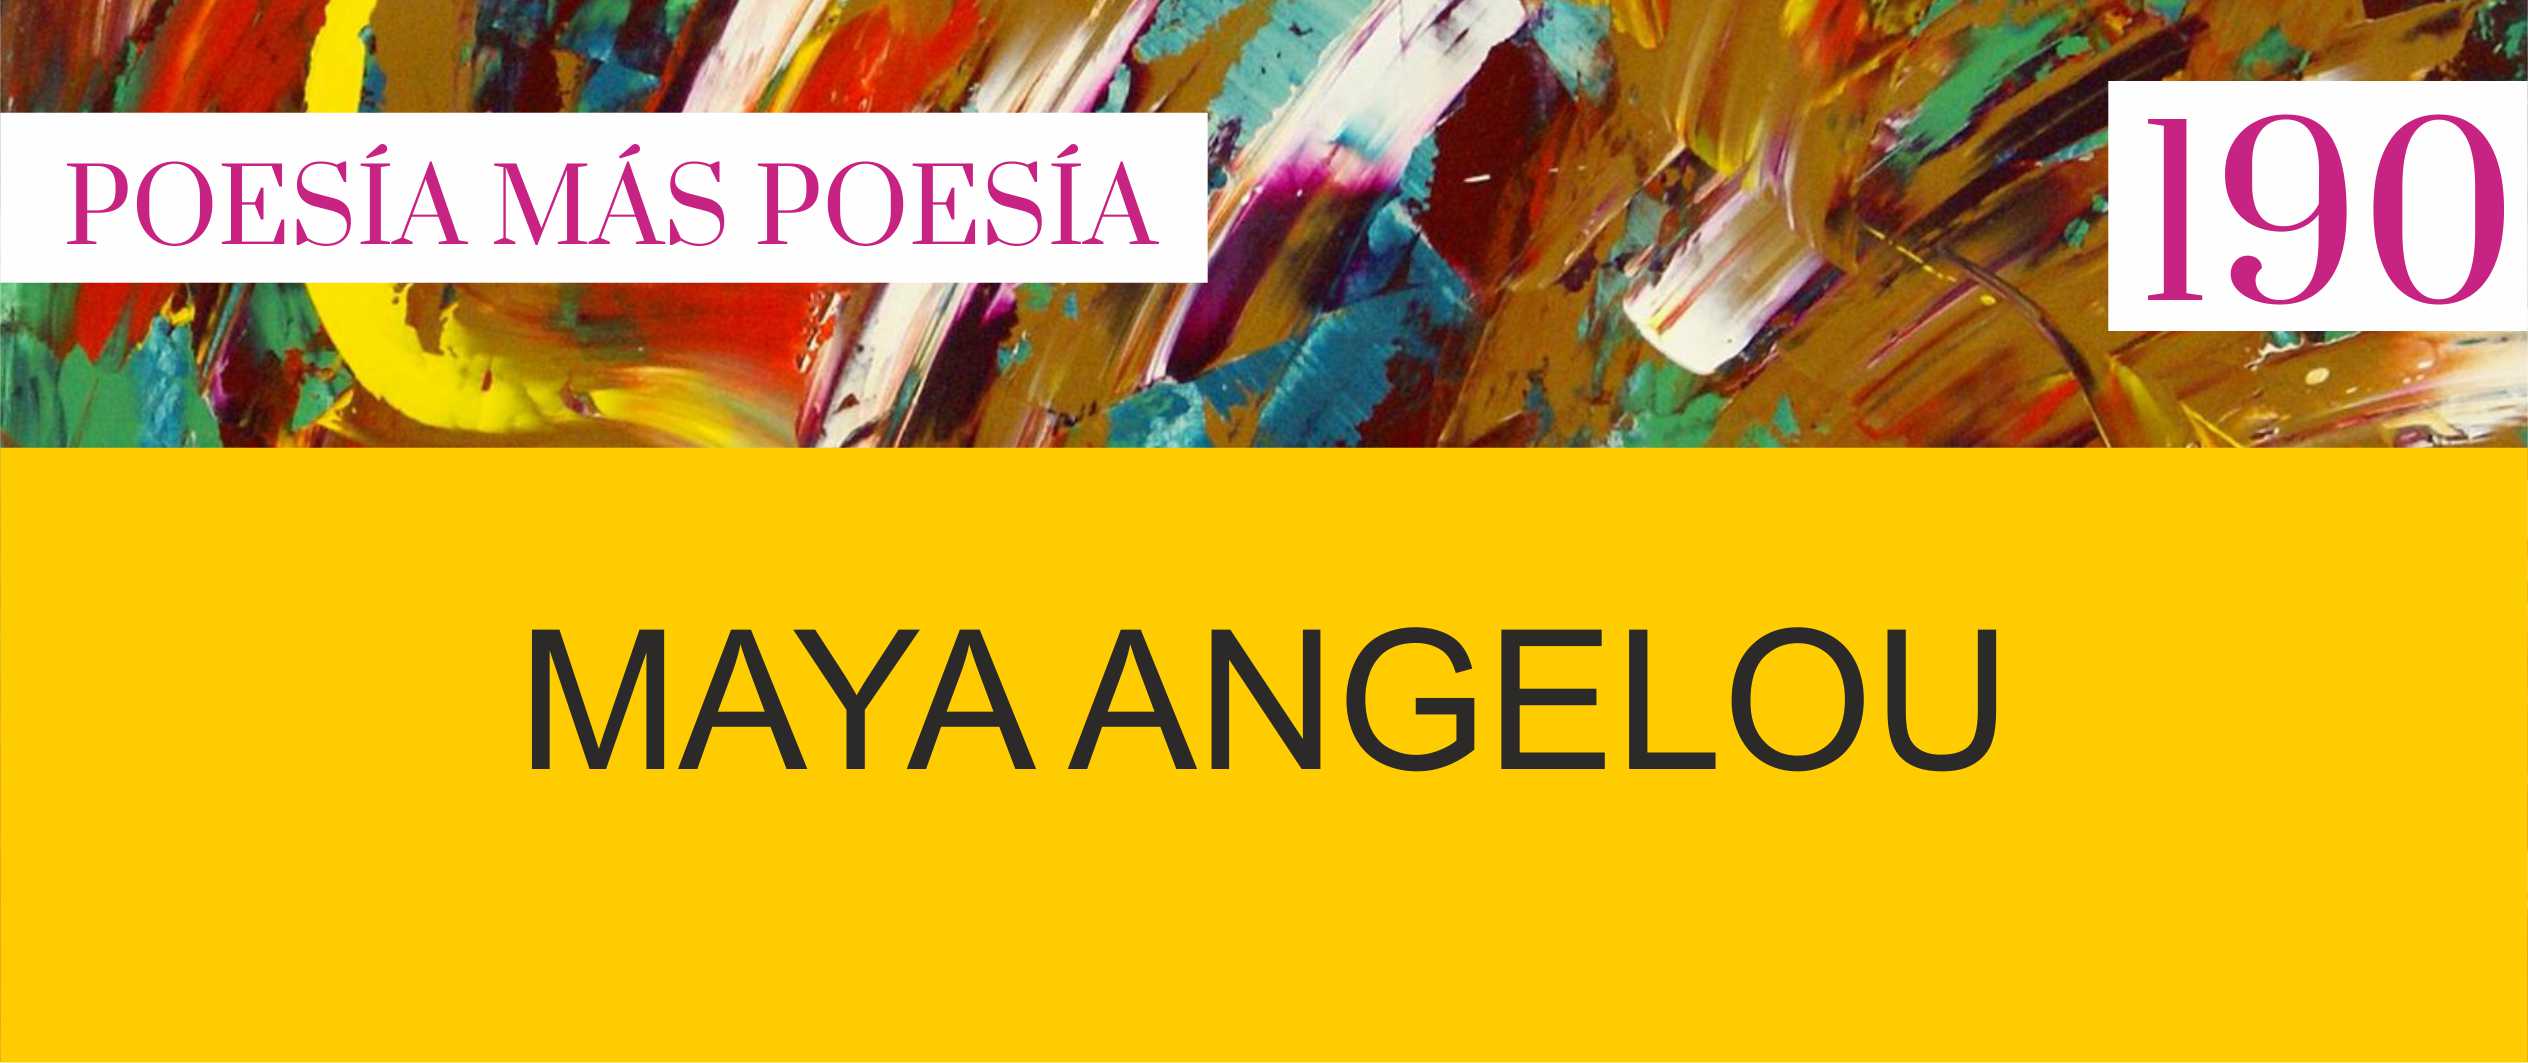 190. Poesía más Poesía: Maya Angelou